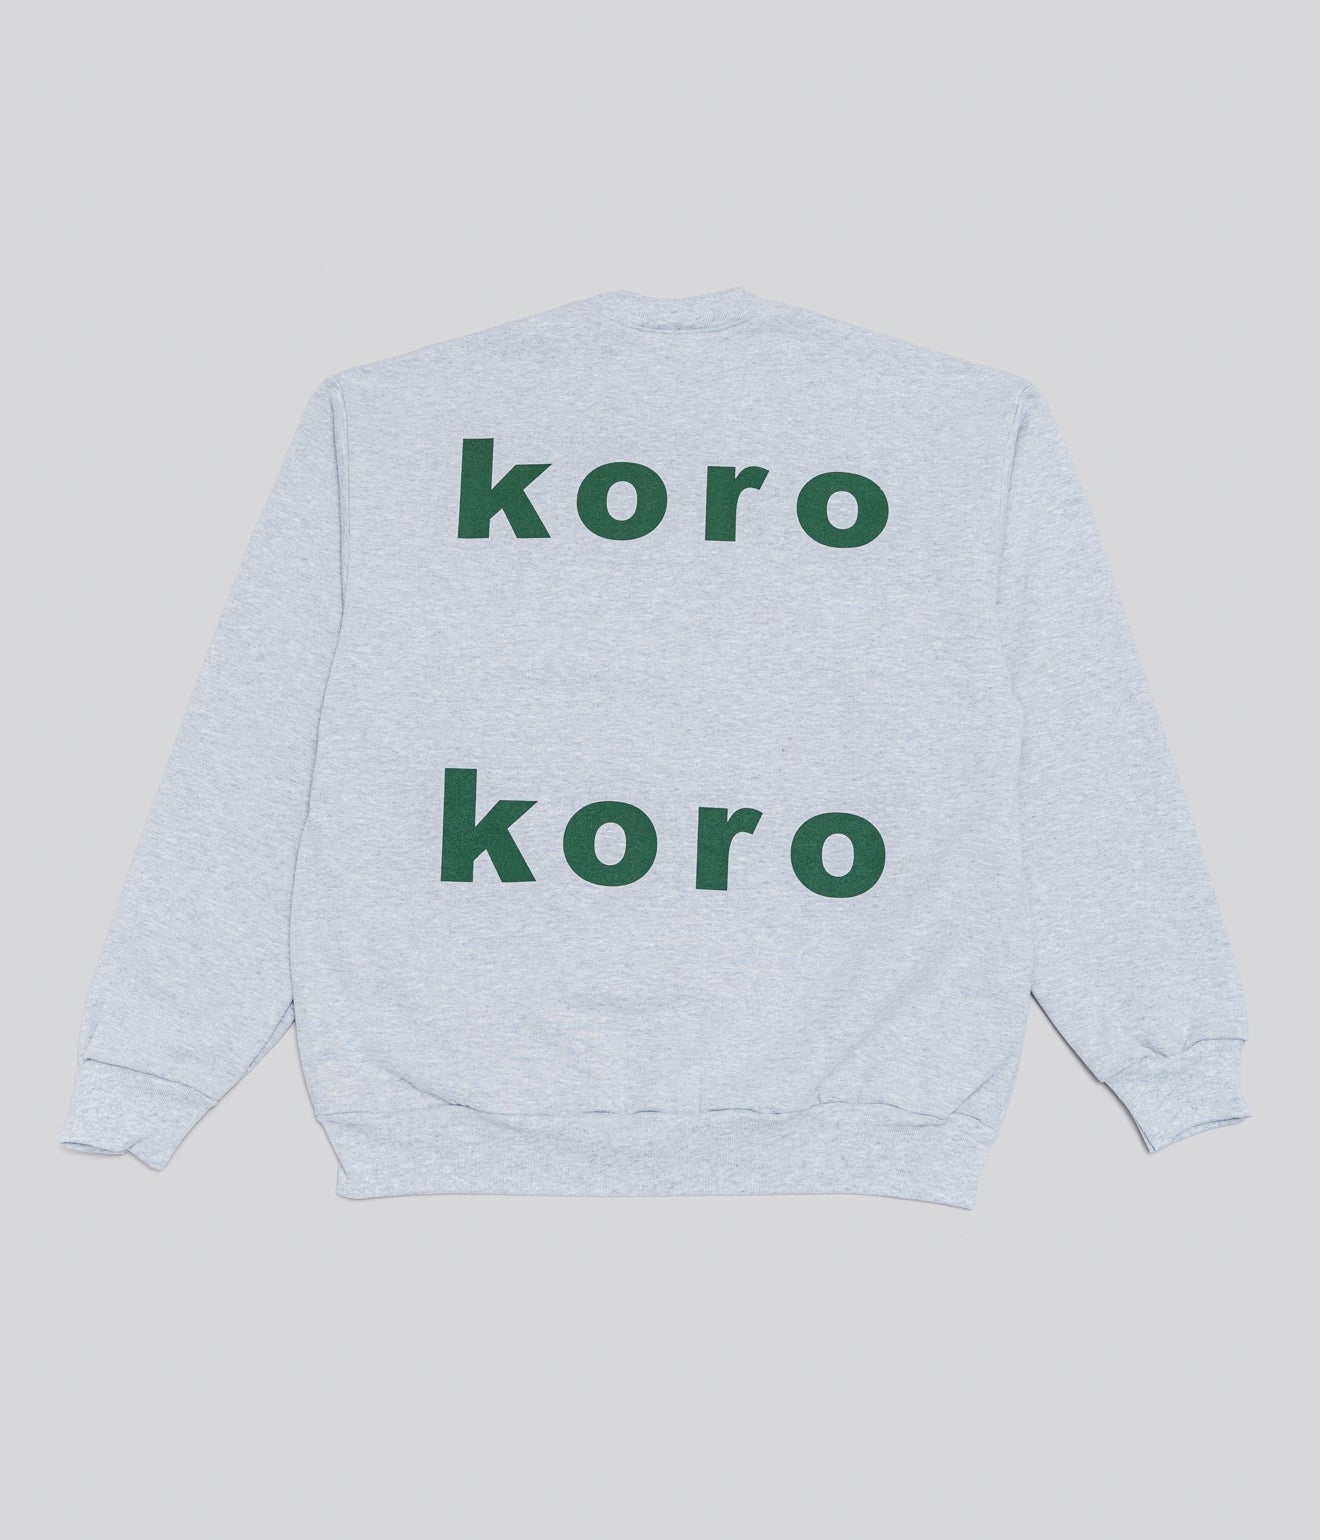 b.Eautiful "koro-koro Crewneck Sweatshirt" - WEAREALLANIMALS